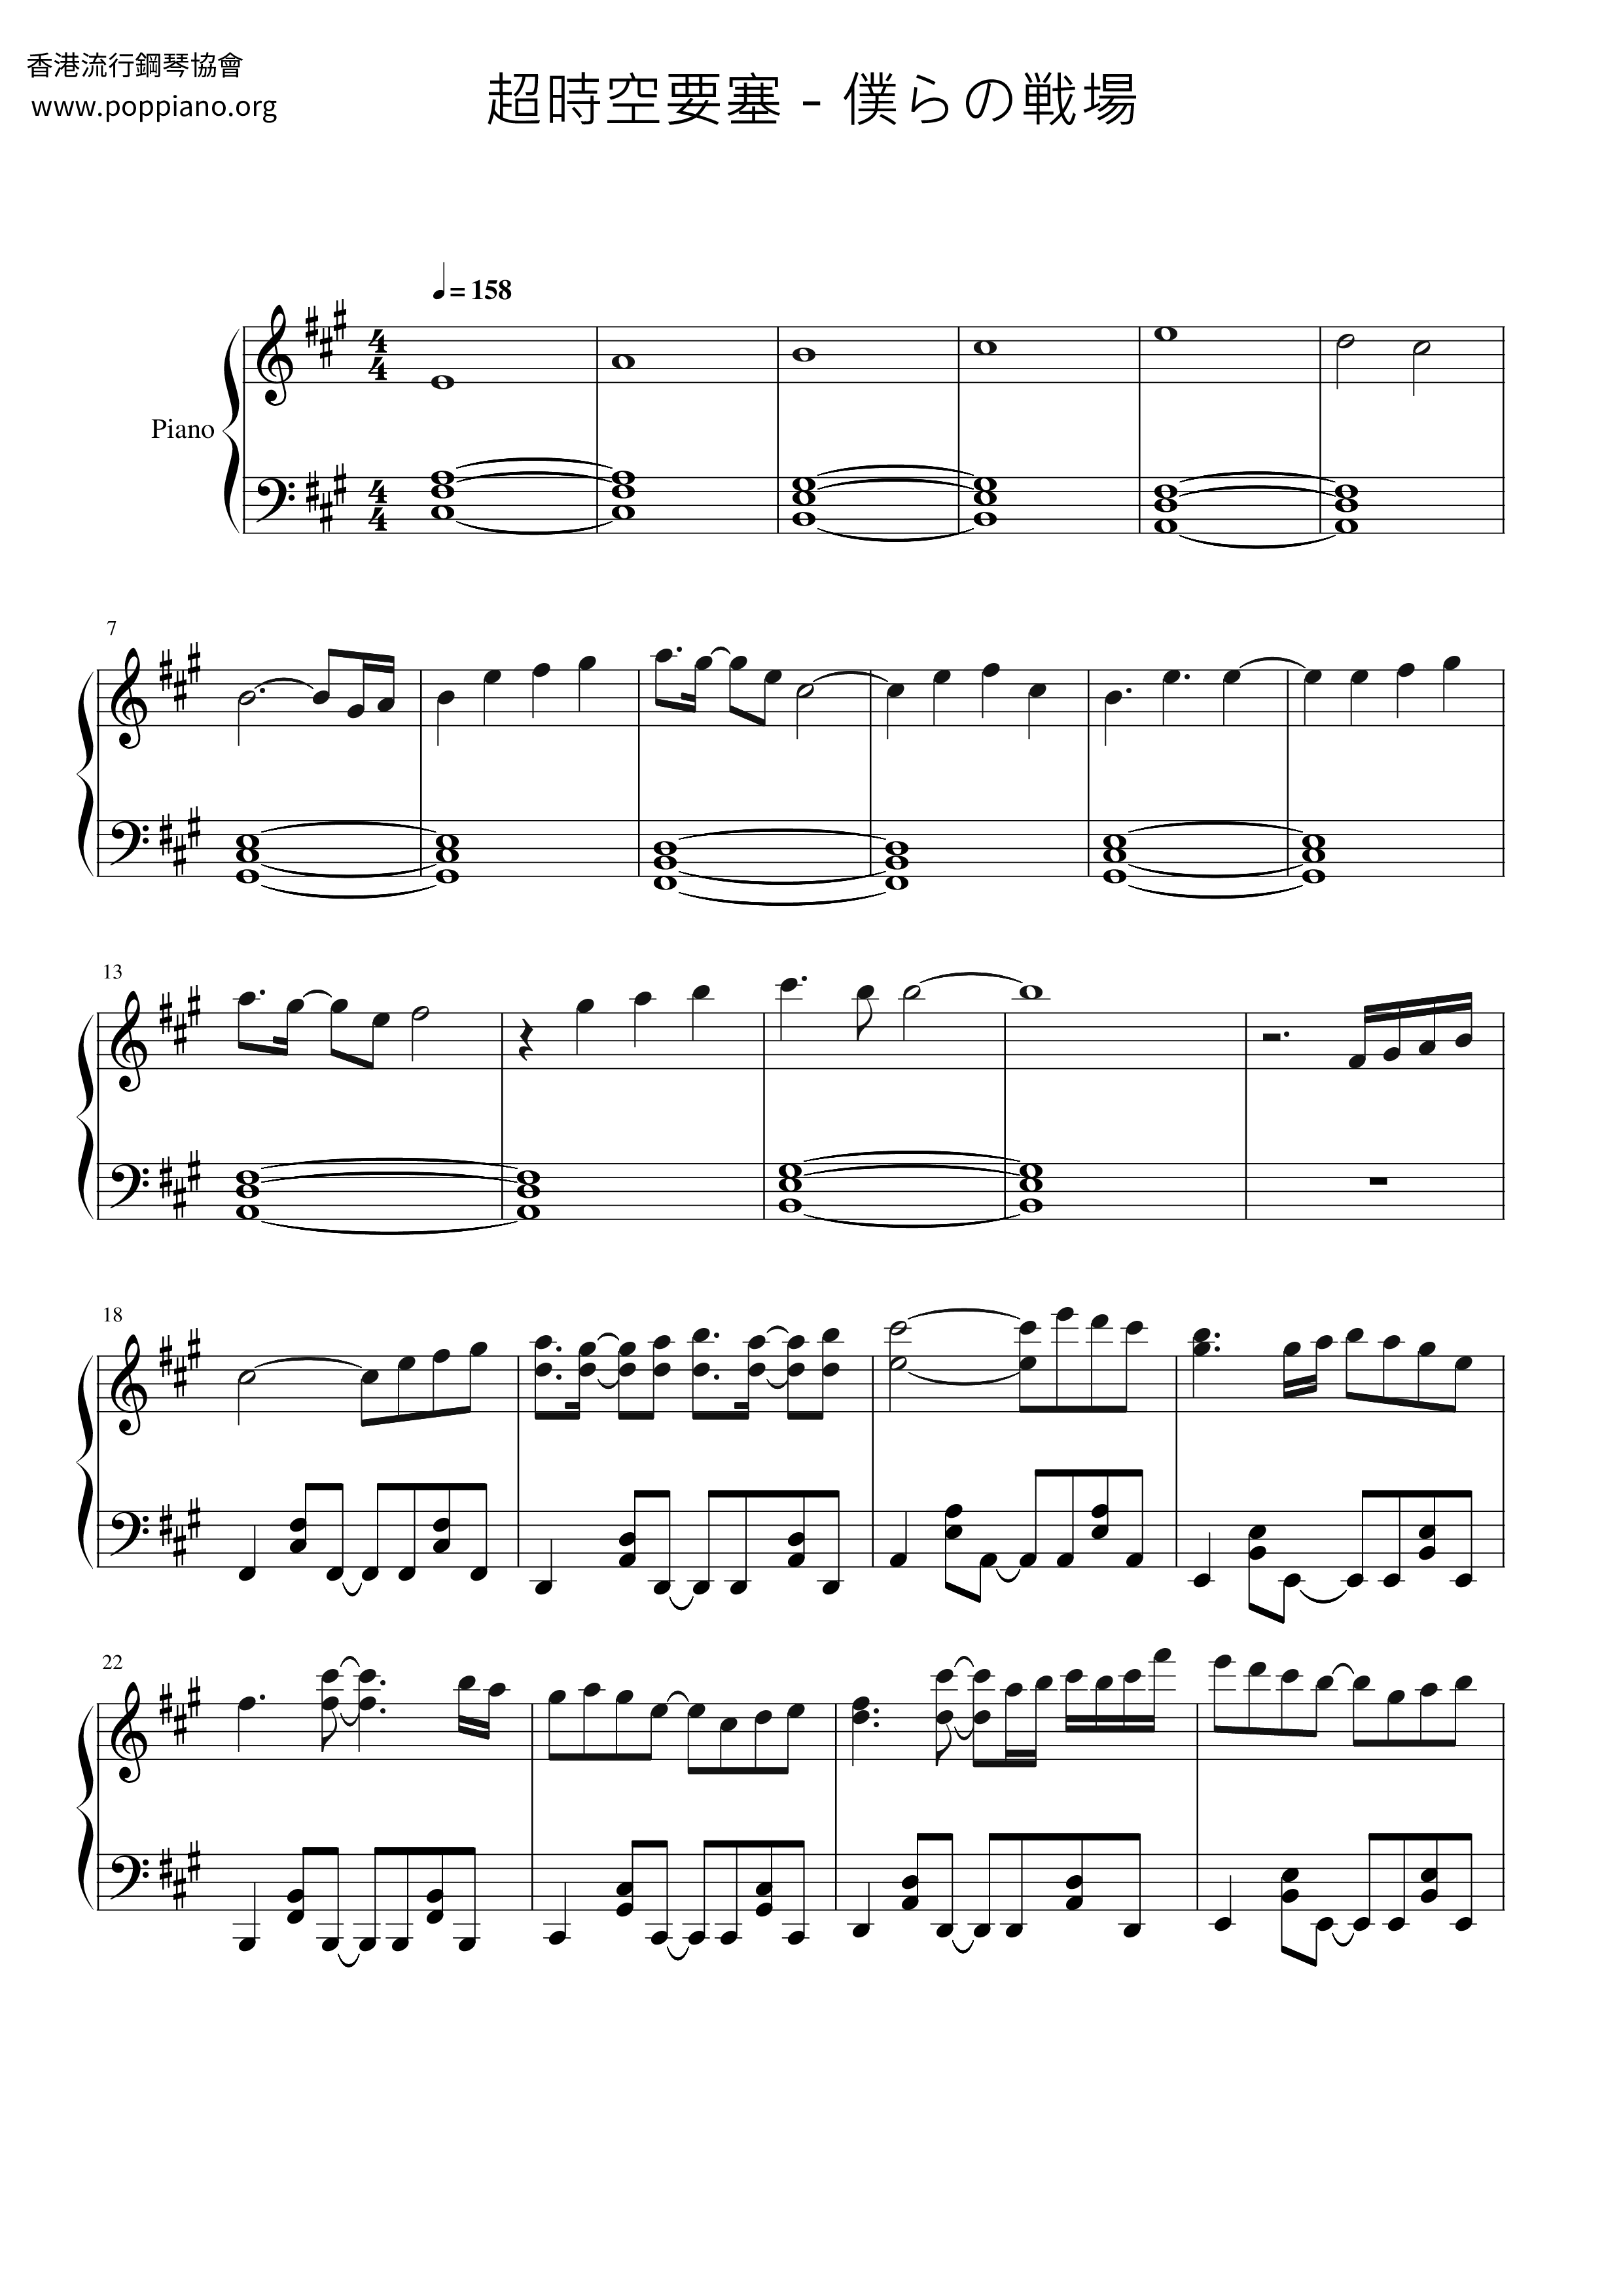 ☆ワルキューレ - マクロス Δ デルタ - 僕らの戦場 楽谱 ピアノ譜pdf 